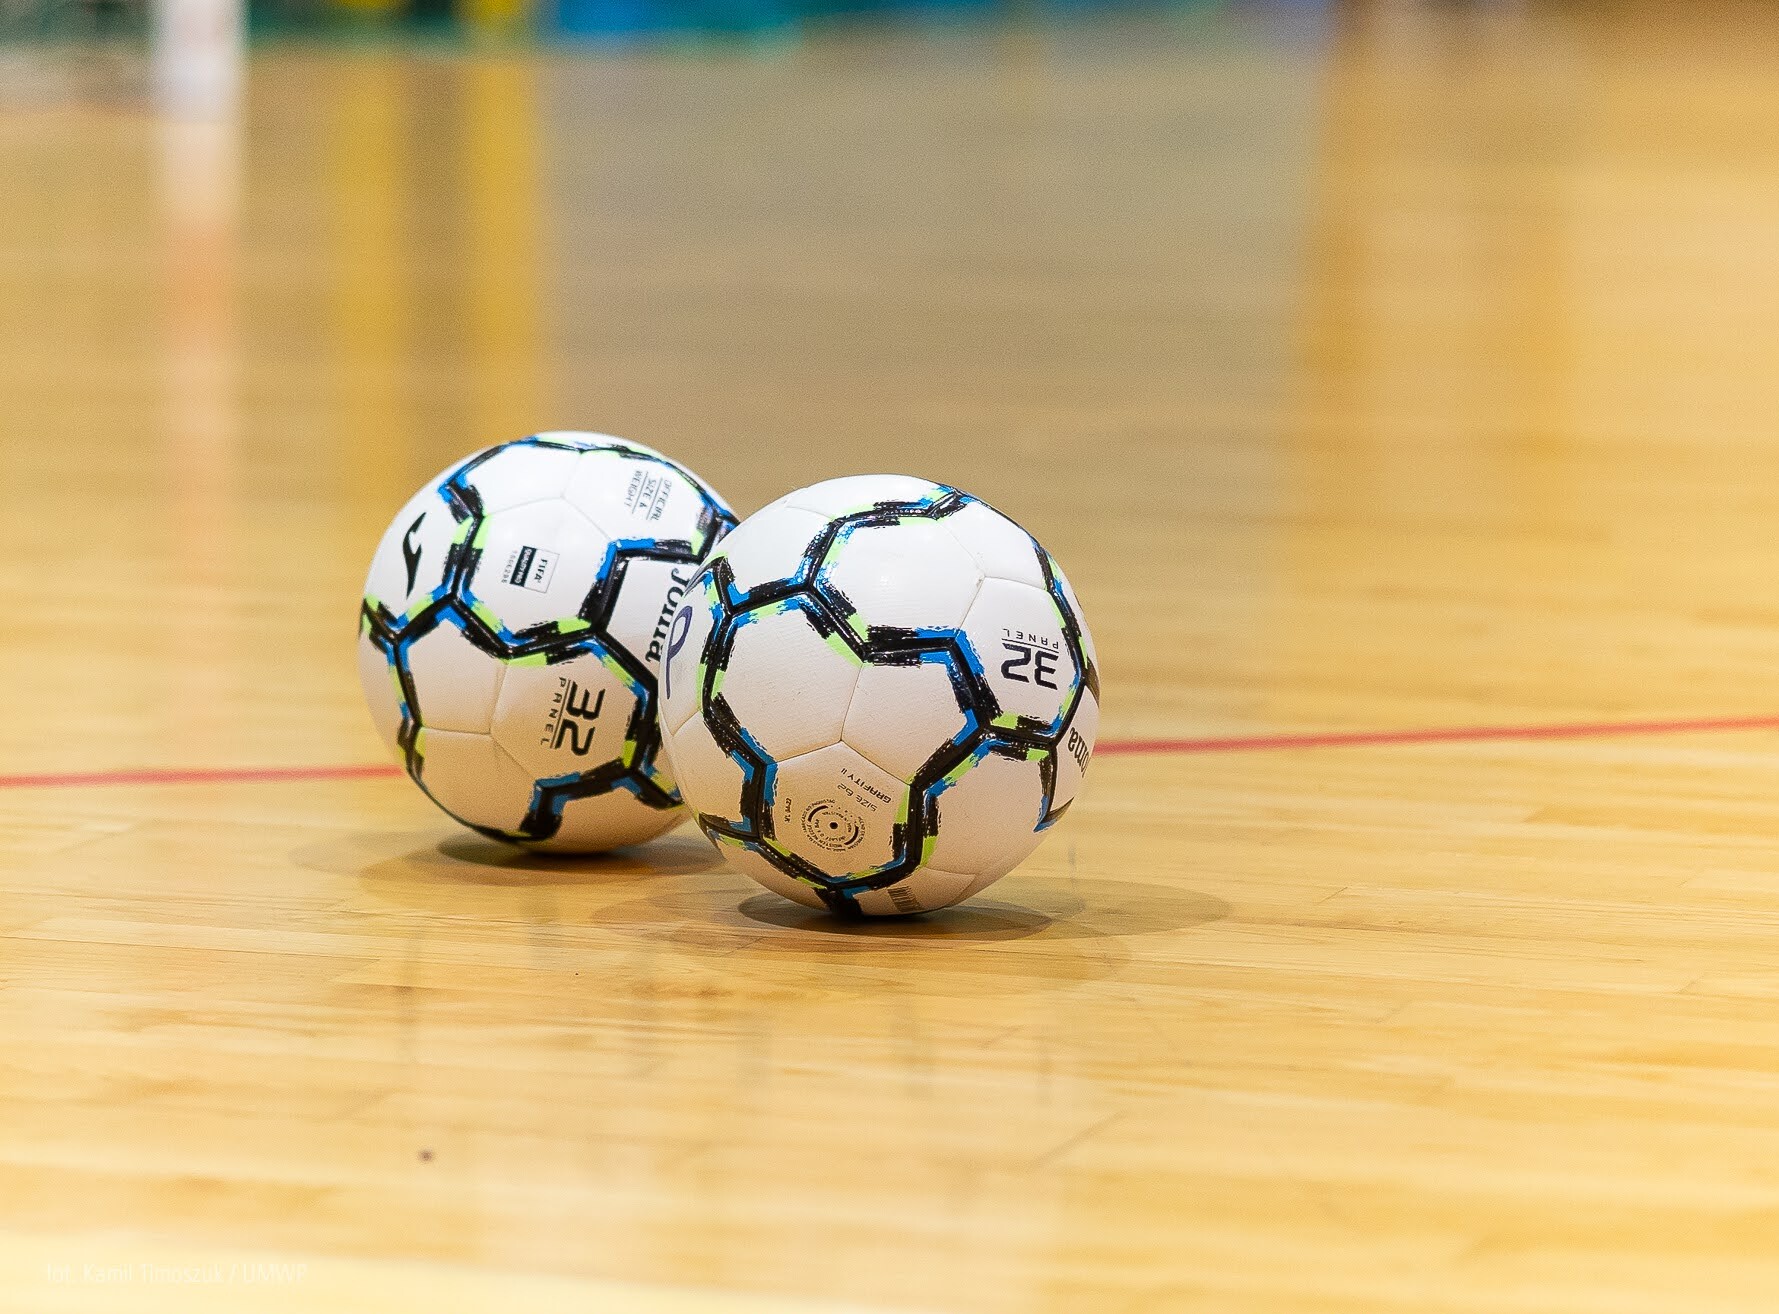 Dwie piłki leżą na podłodze hali sportowej.